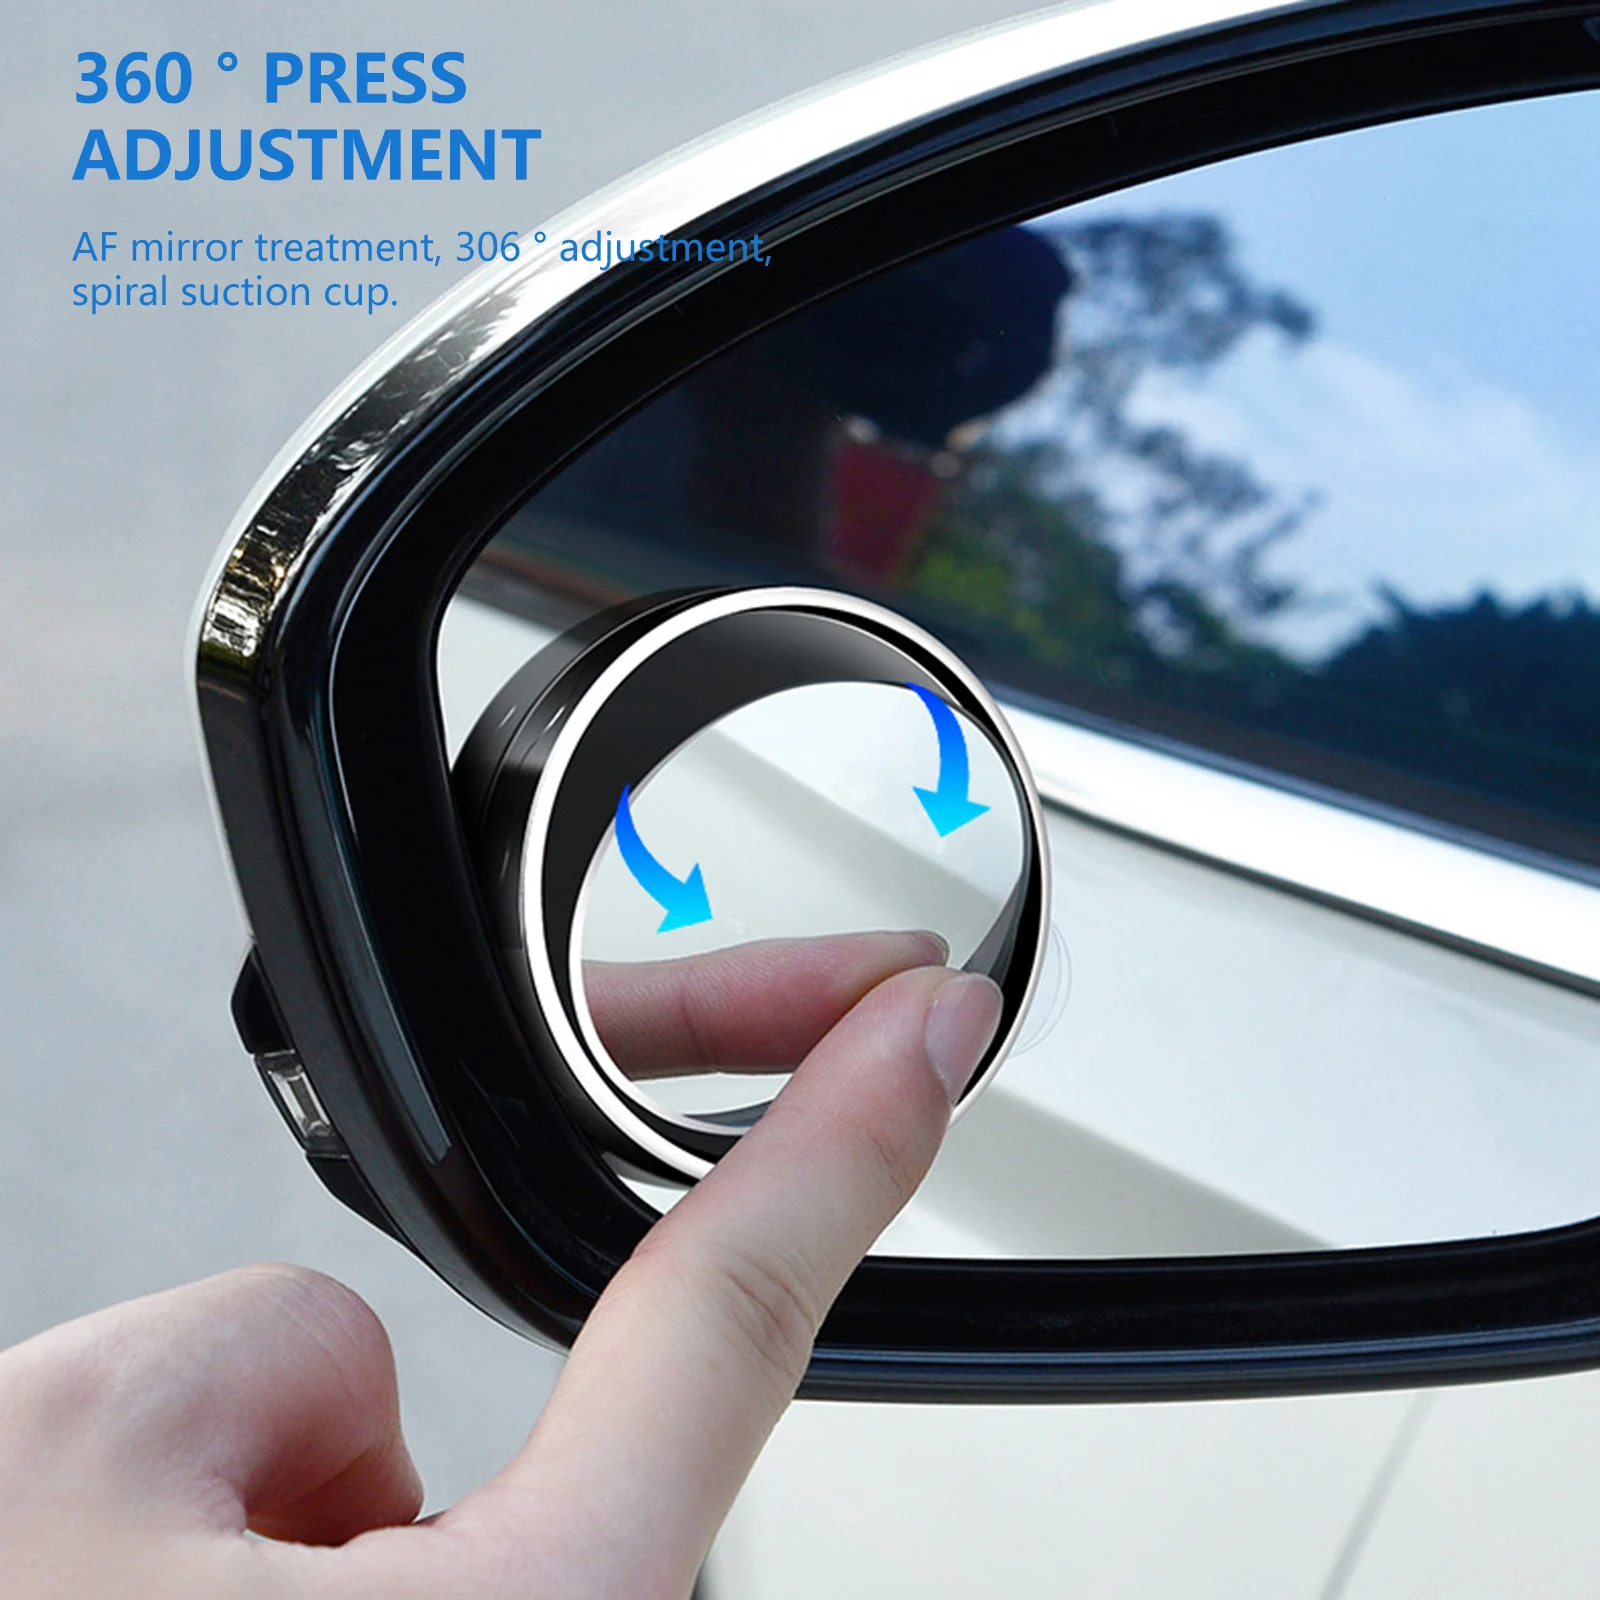 2 Adet Araba Yuvarlak Çerçeve Dışbükey Kör Nokta Ayna Geniş açı 360 Derece Ayarlanabilir Temizle Dikiz Yardımcı Ayna Sürüş Güvenliği